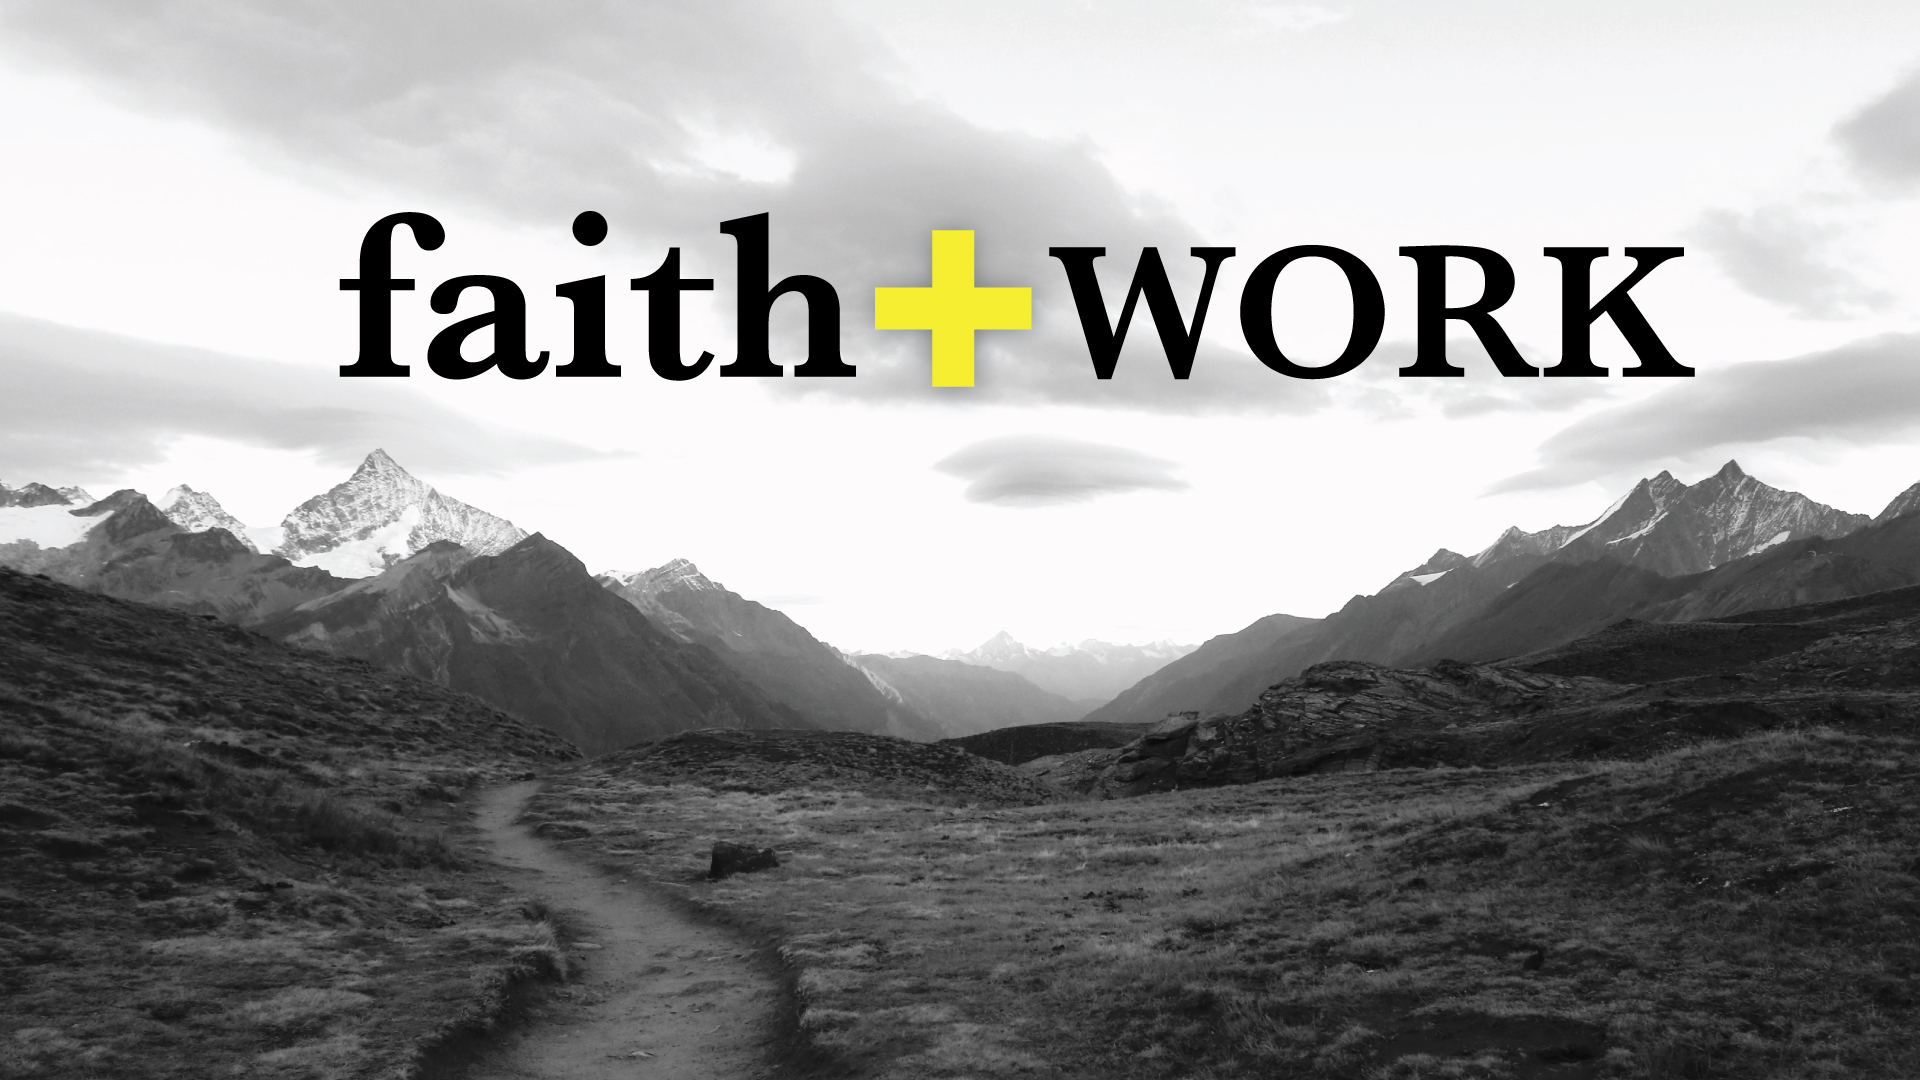 Faith+Work: Called Into Partnership